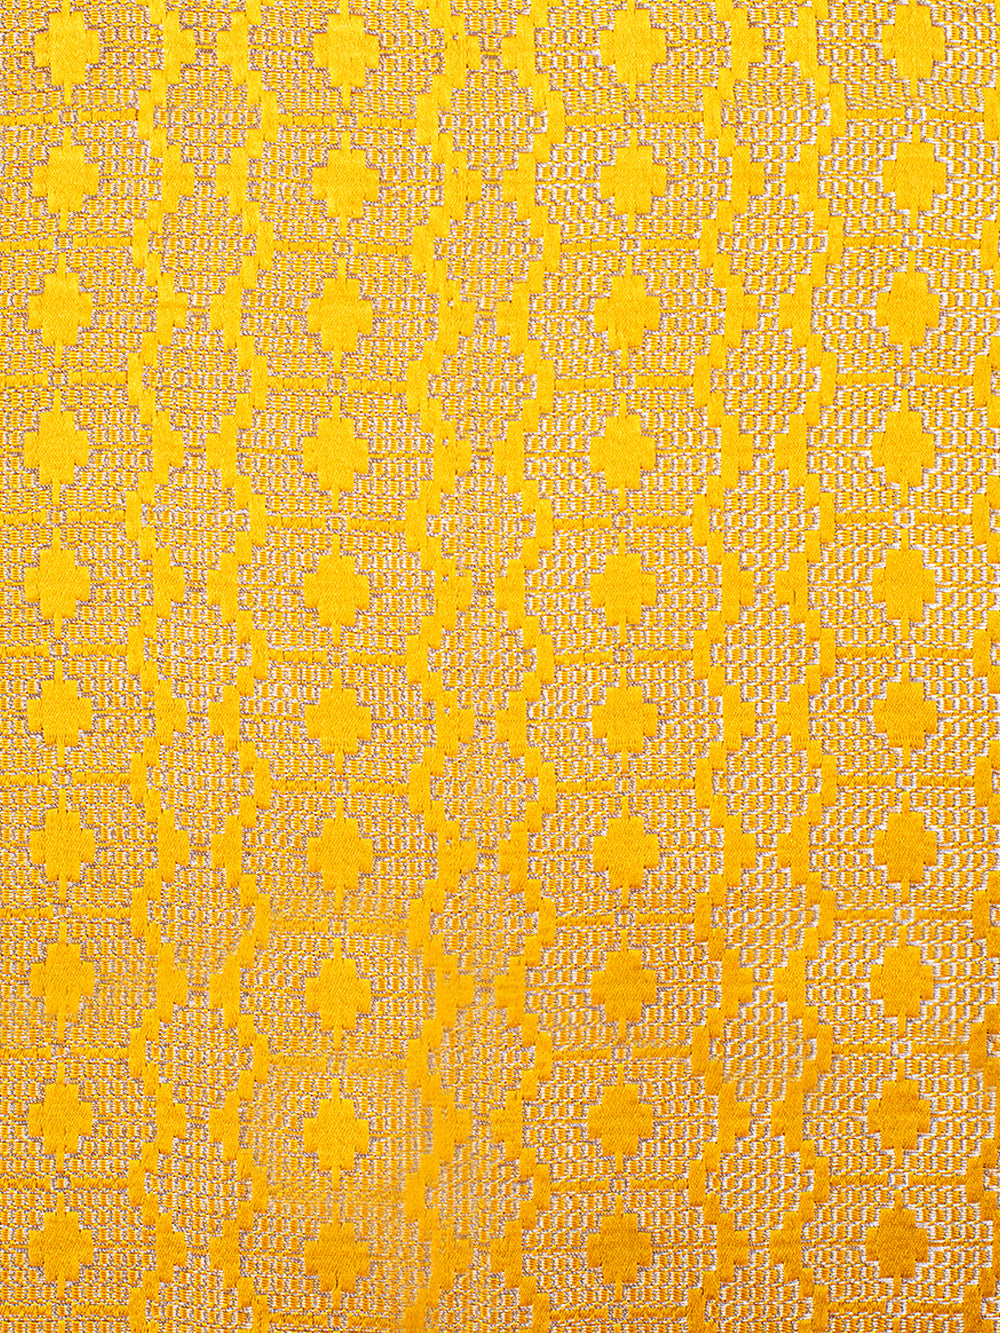 Handwoven Yellow Silk Lehenga